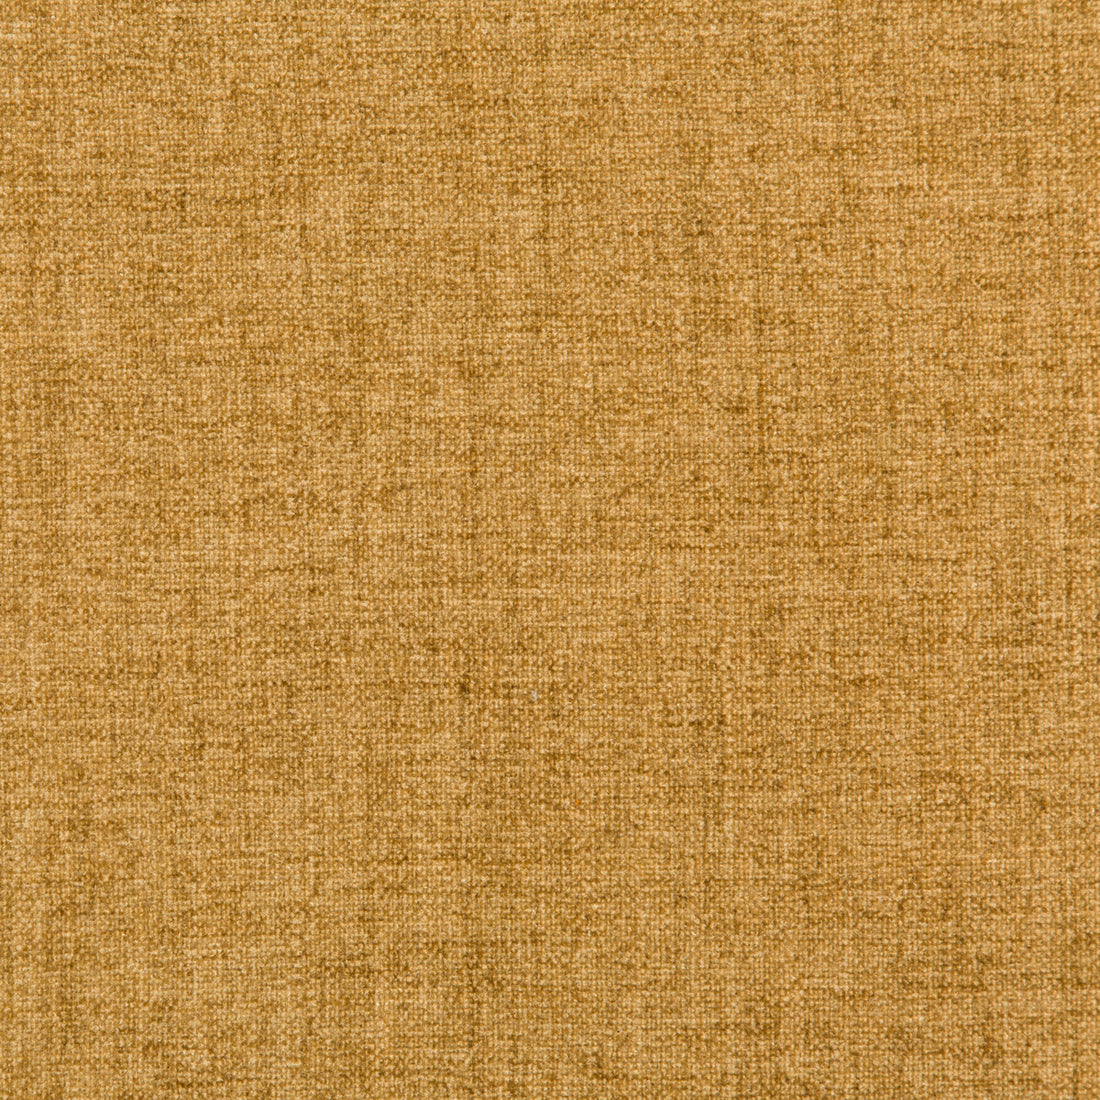 Kravet Basics fabric in 35775-516 color - pattern 35775.516.0 - by Kravet Basics